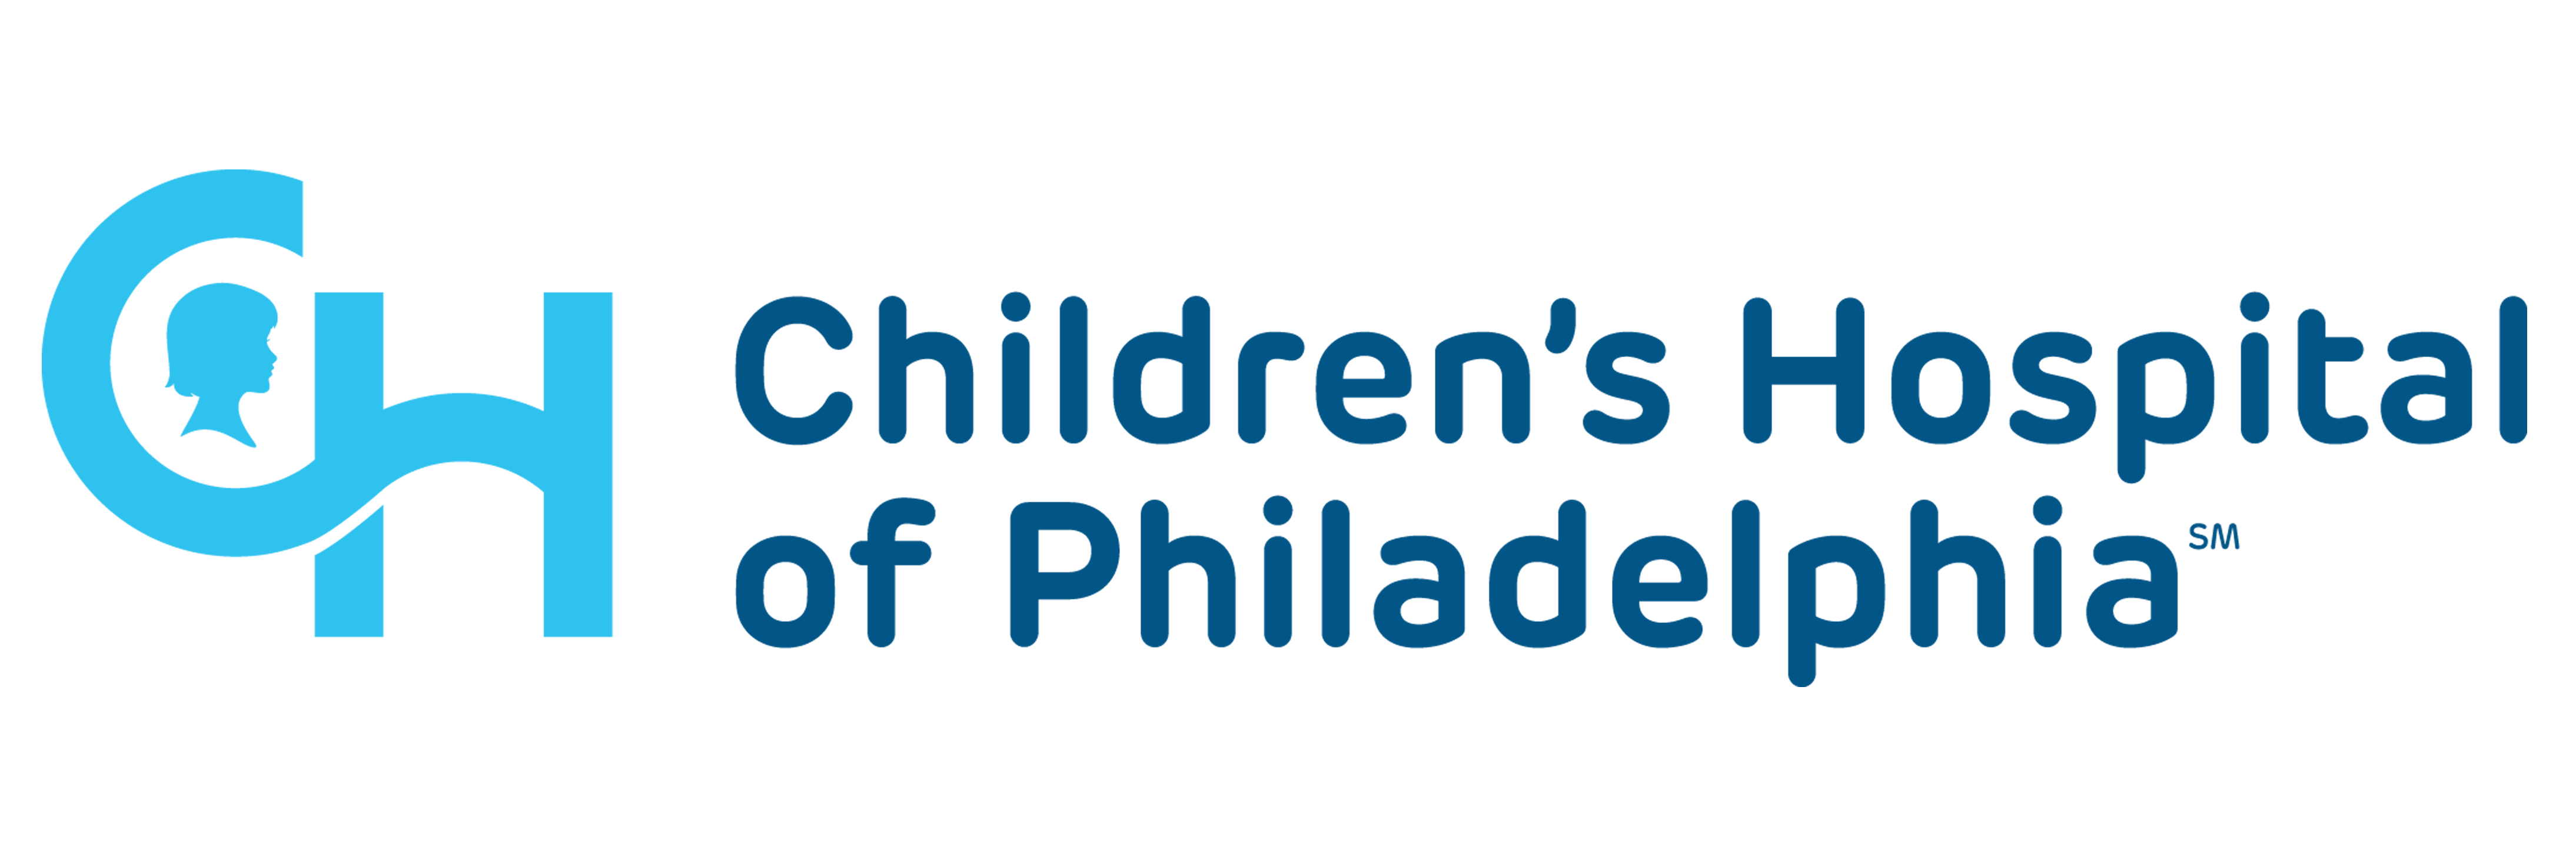 Childrens-Hospital-of-Philadelphia-1626438919.png